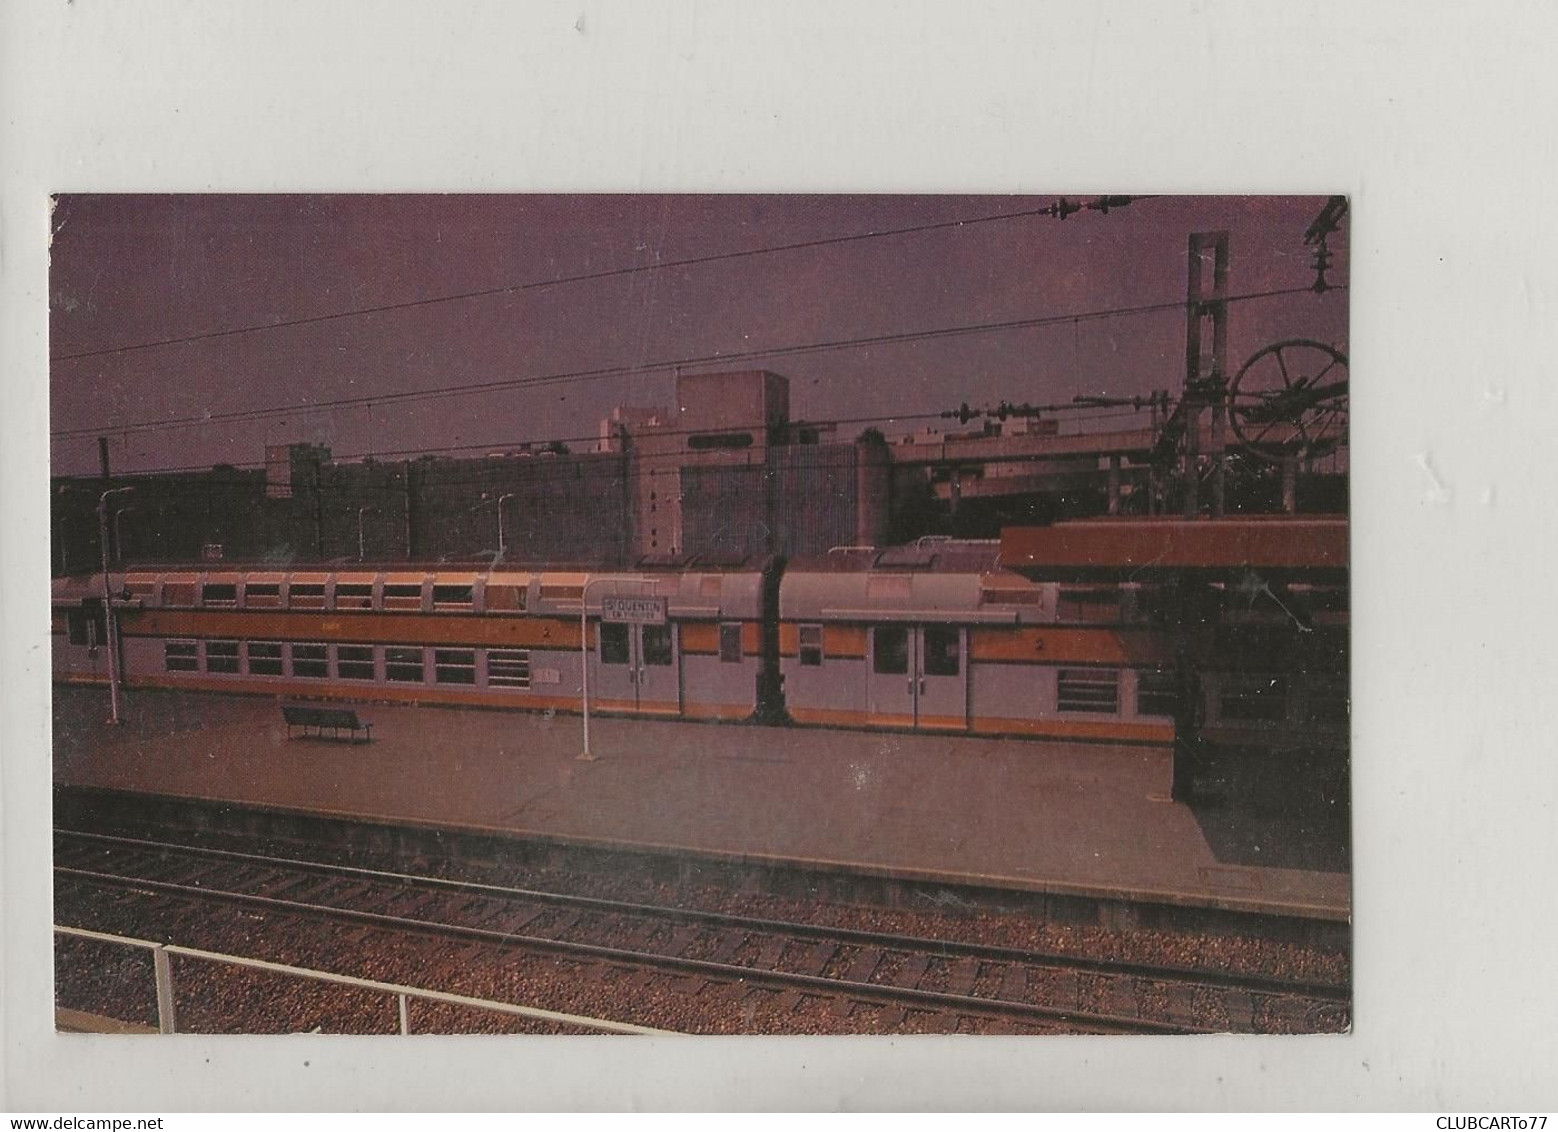 Saint-Quentin-en-Yvelines (78) : Train En Gare De La Ville Nouvelle En 1987 (Taille Non Standard) GF. - St. Quentin En Yvelines